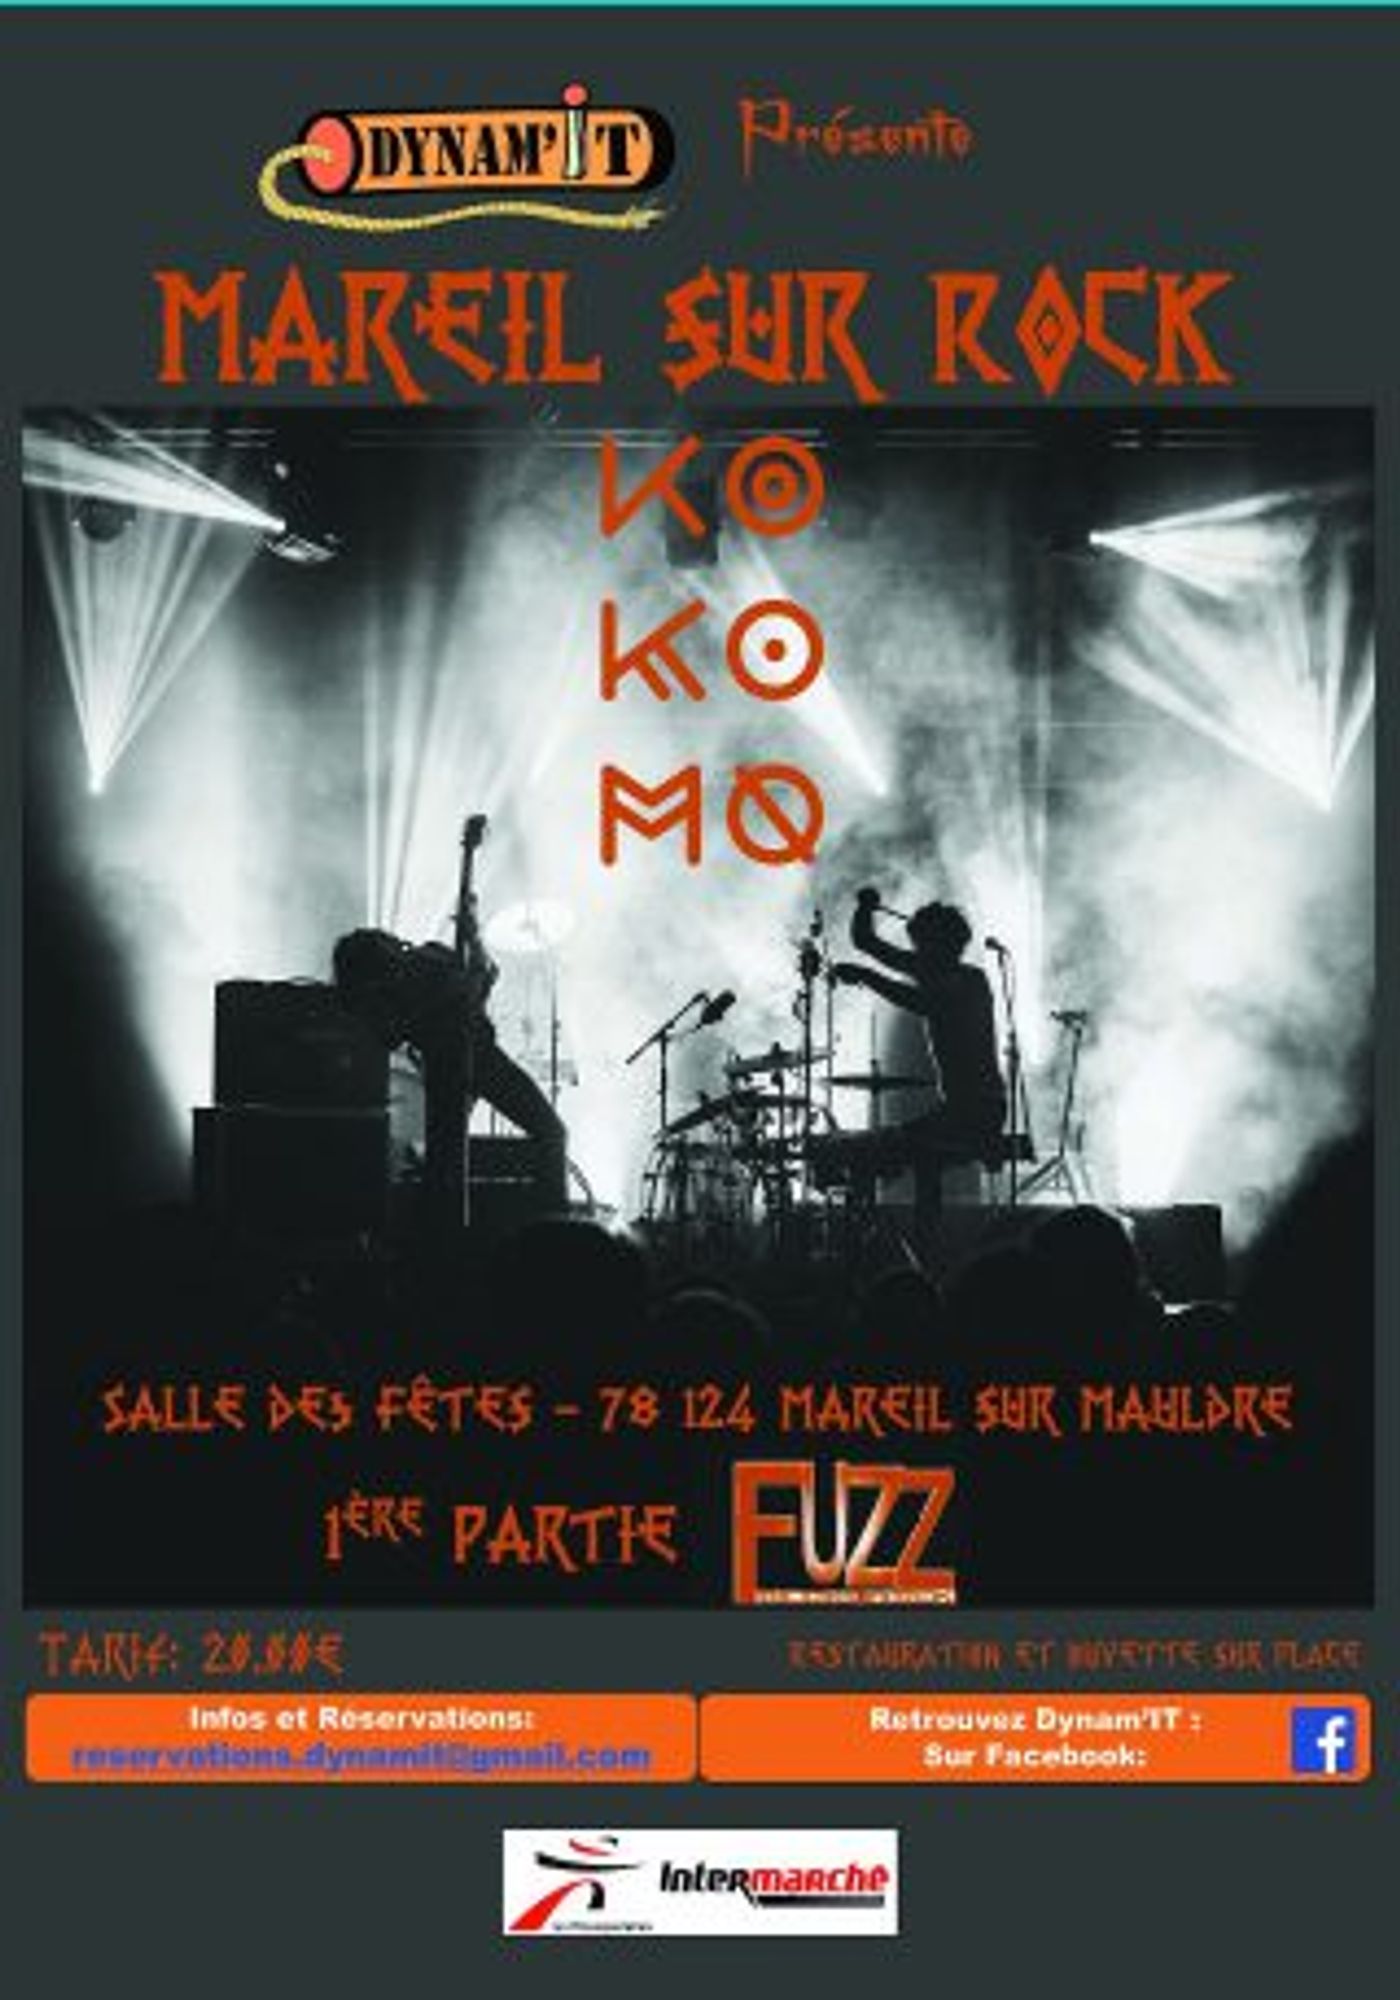 OÜI FM vous invite au festival Mareil Sur Rock